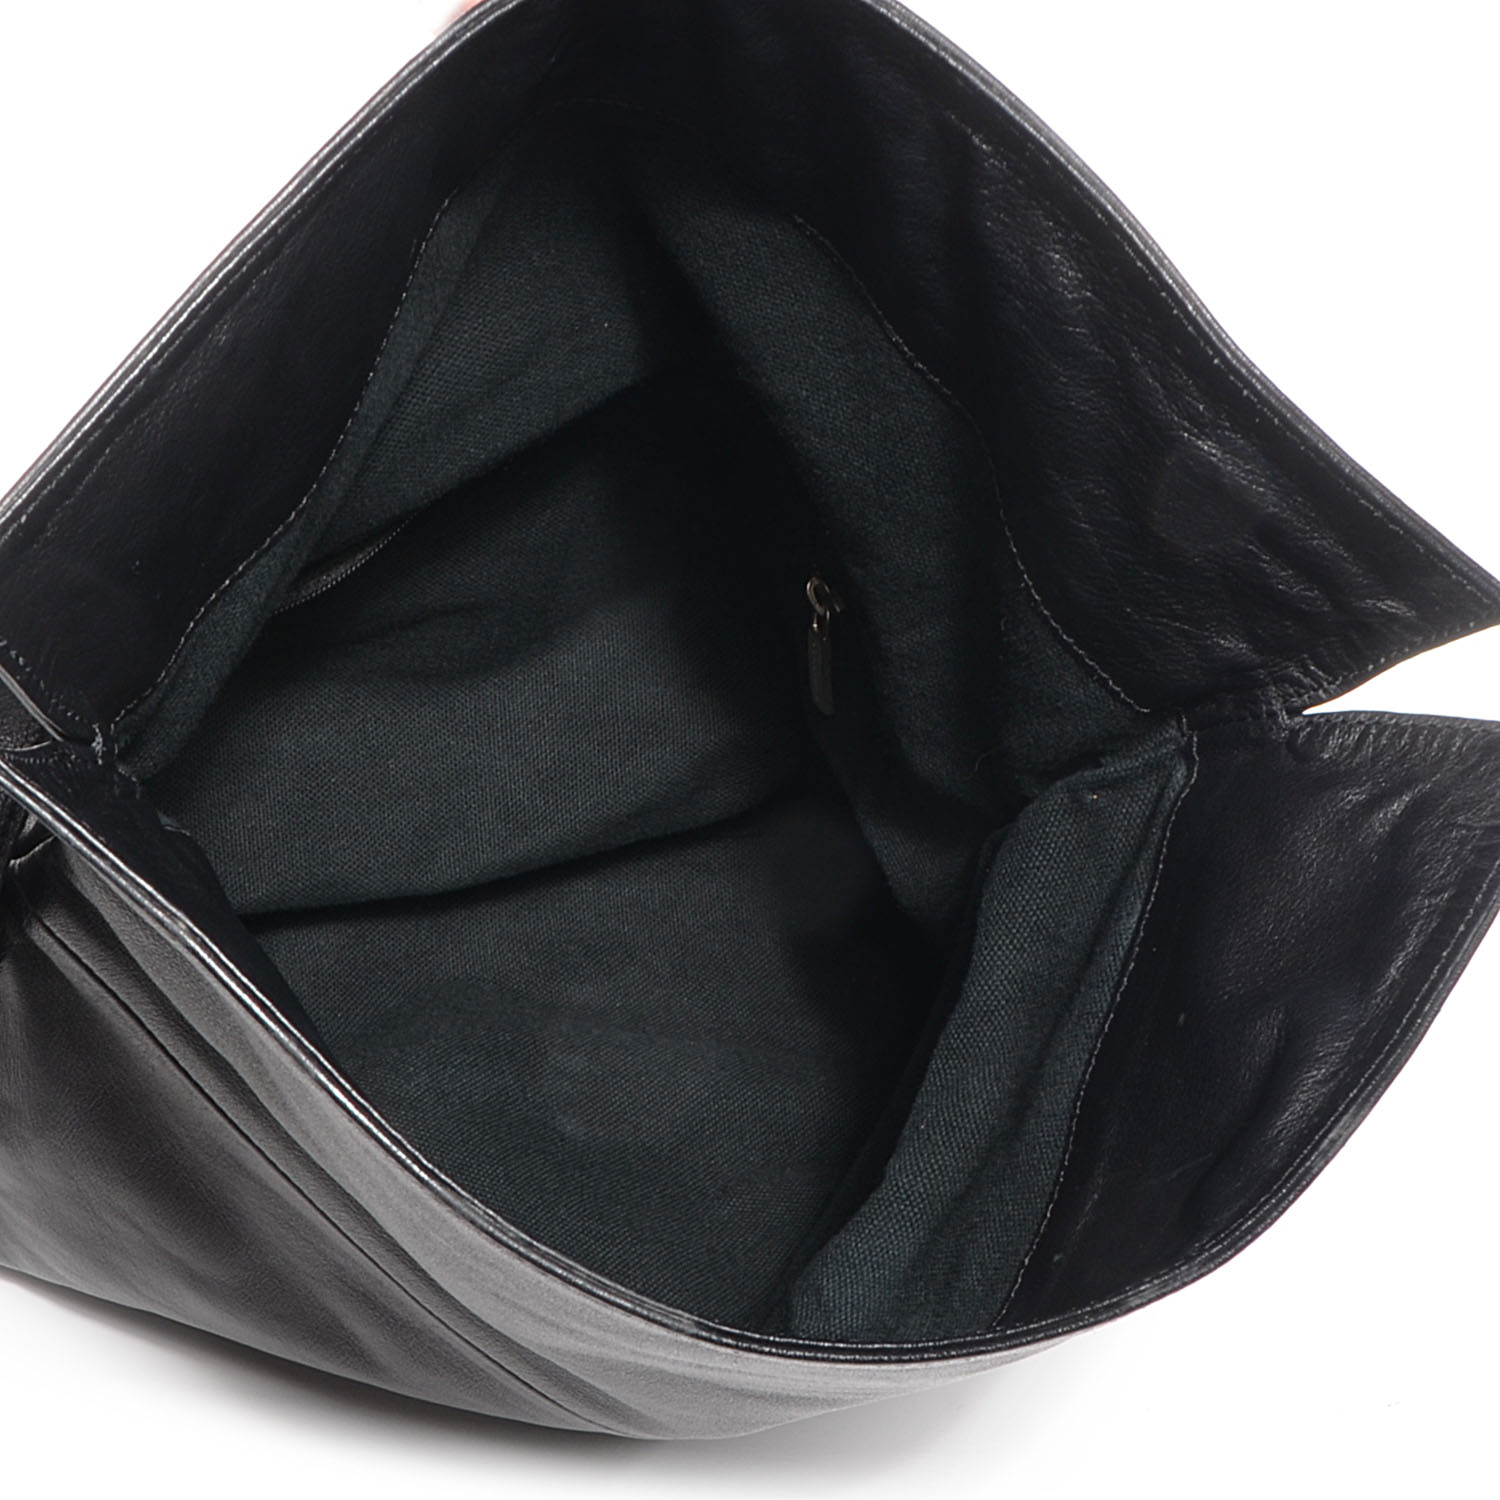 BURBERRY Leather Haymarket Check Horn Toggle Shoulder Bag Black 73397